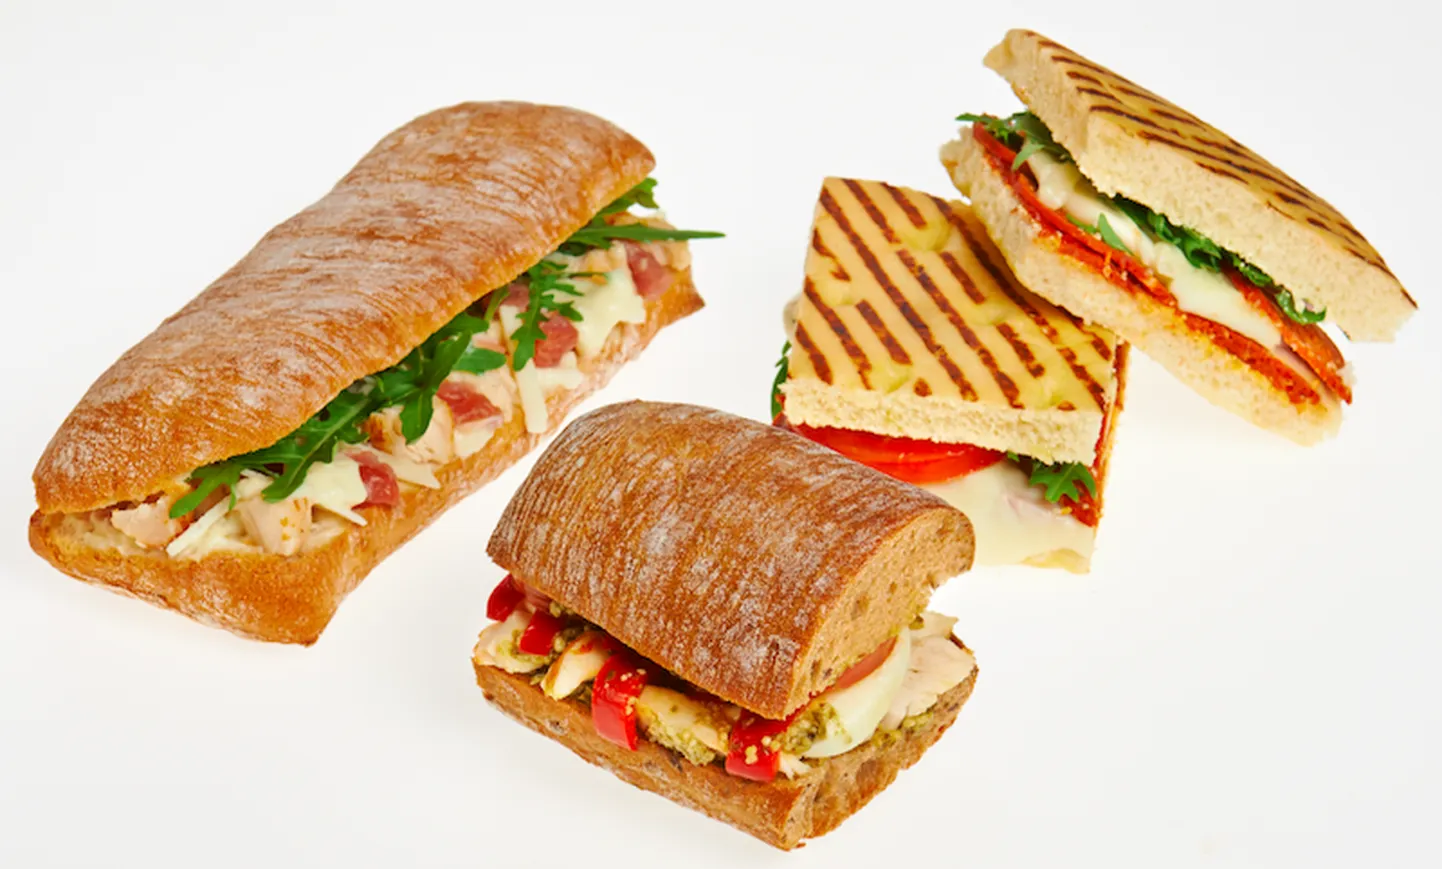 Statoil начинает предлагать новые бутерброды и салаты.